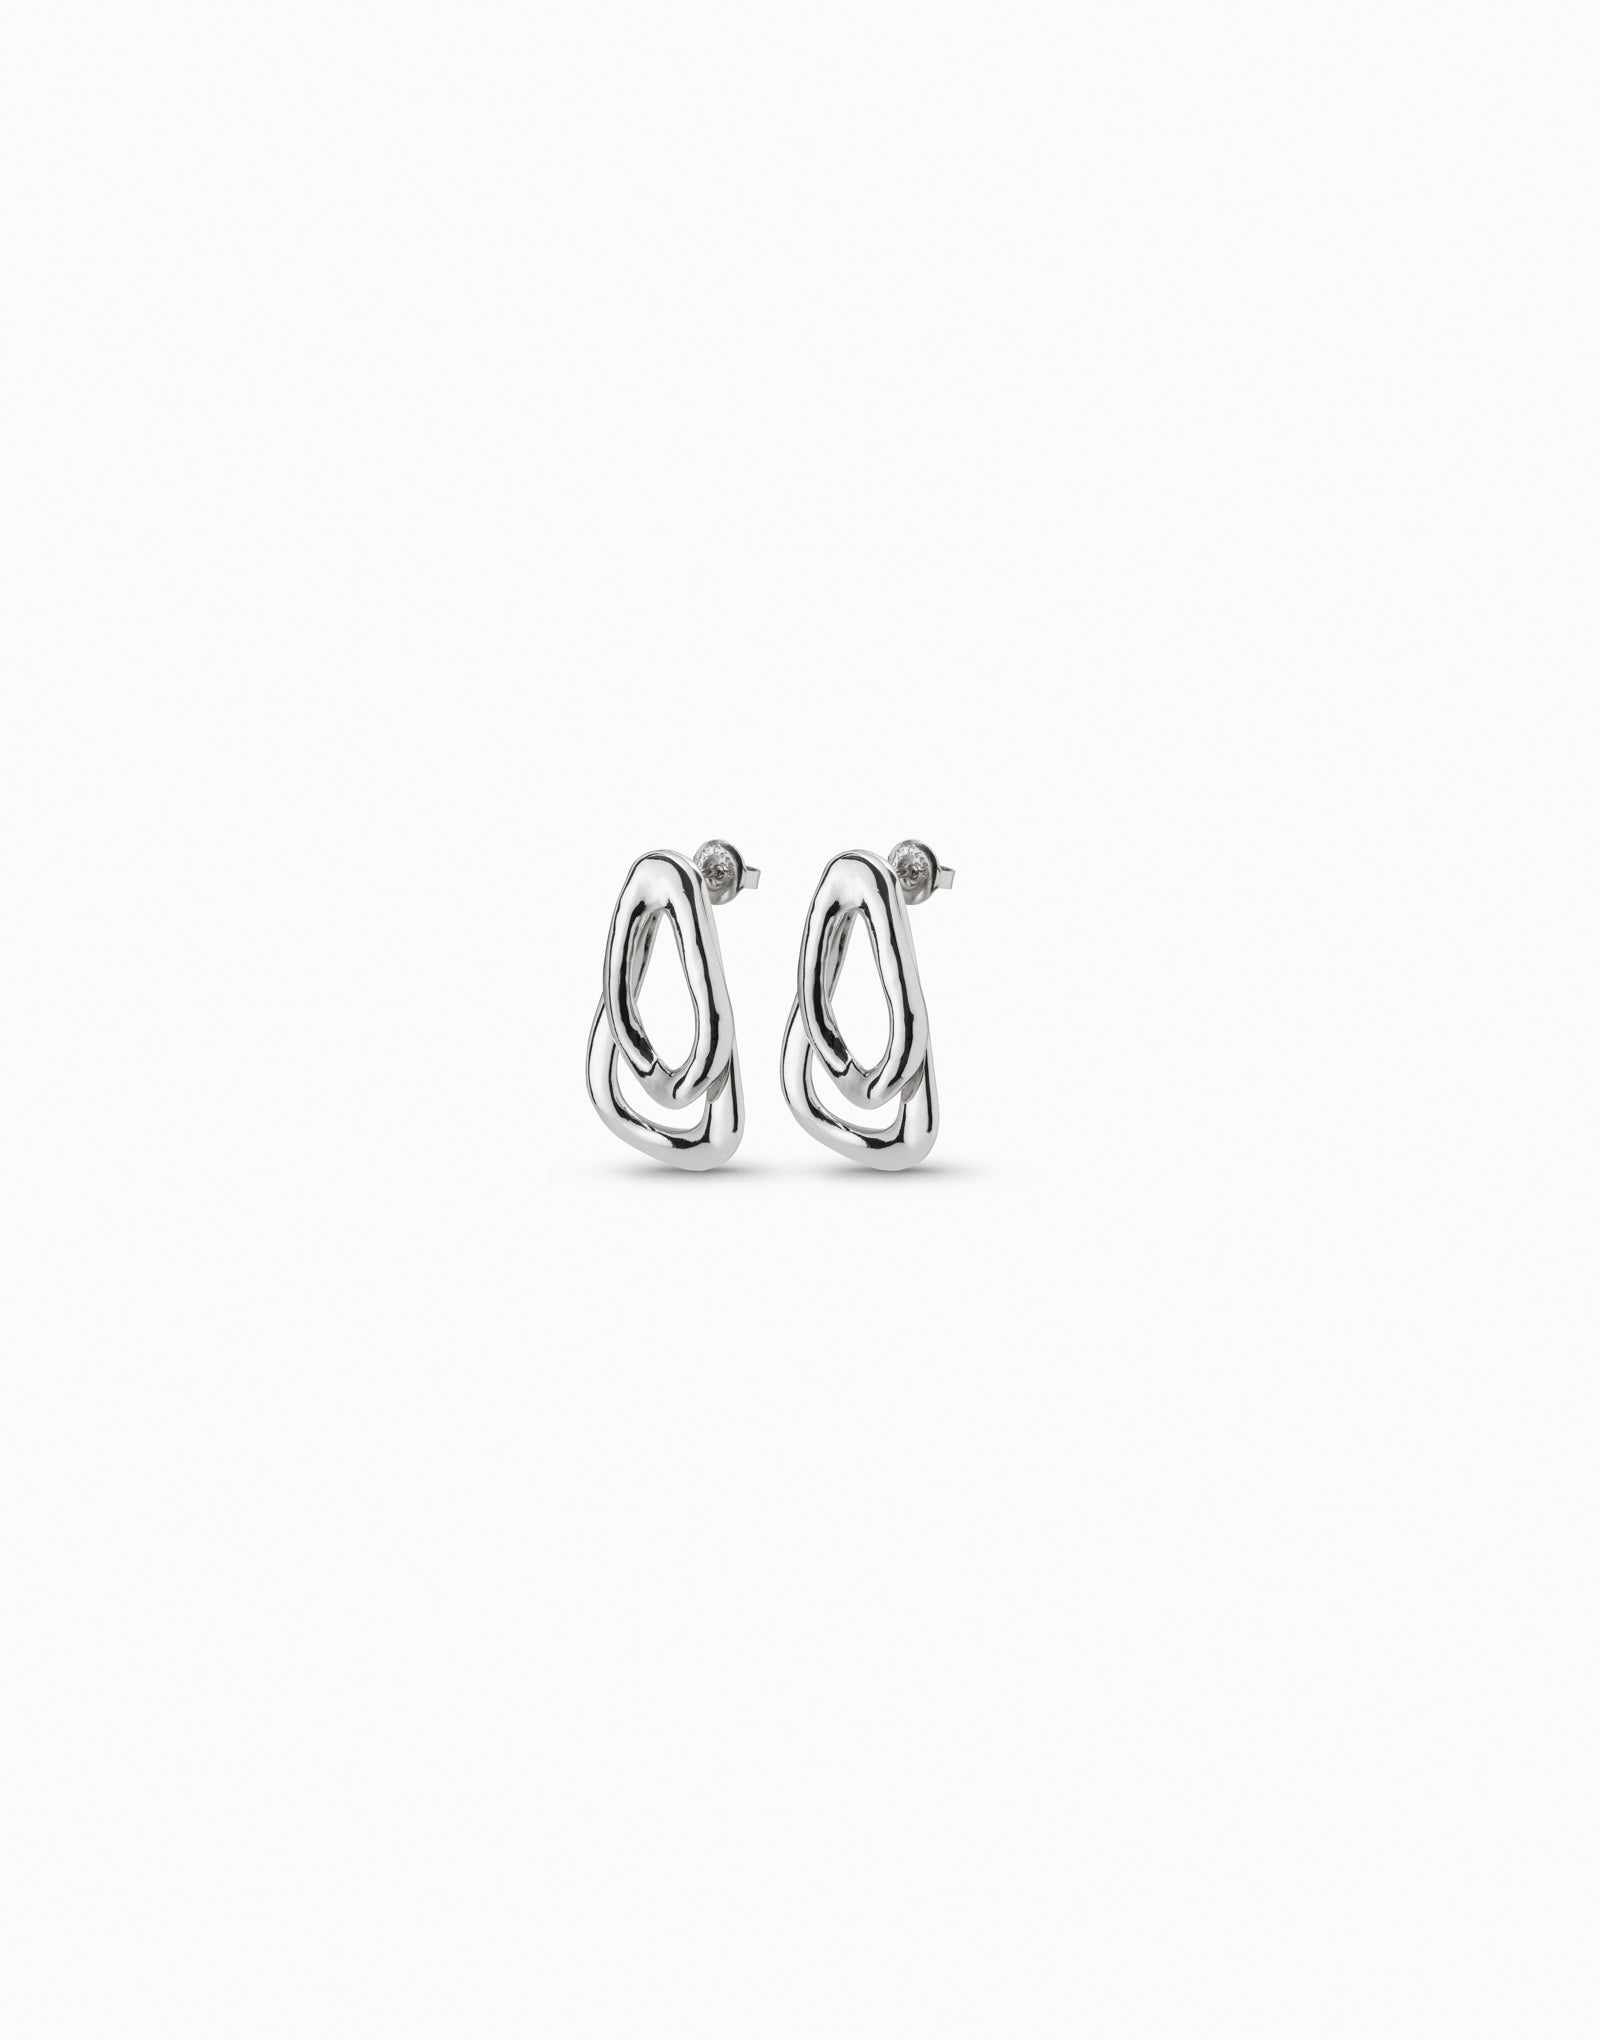 Connected Earrings - Uno De 50